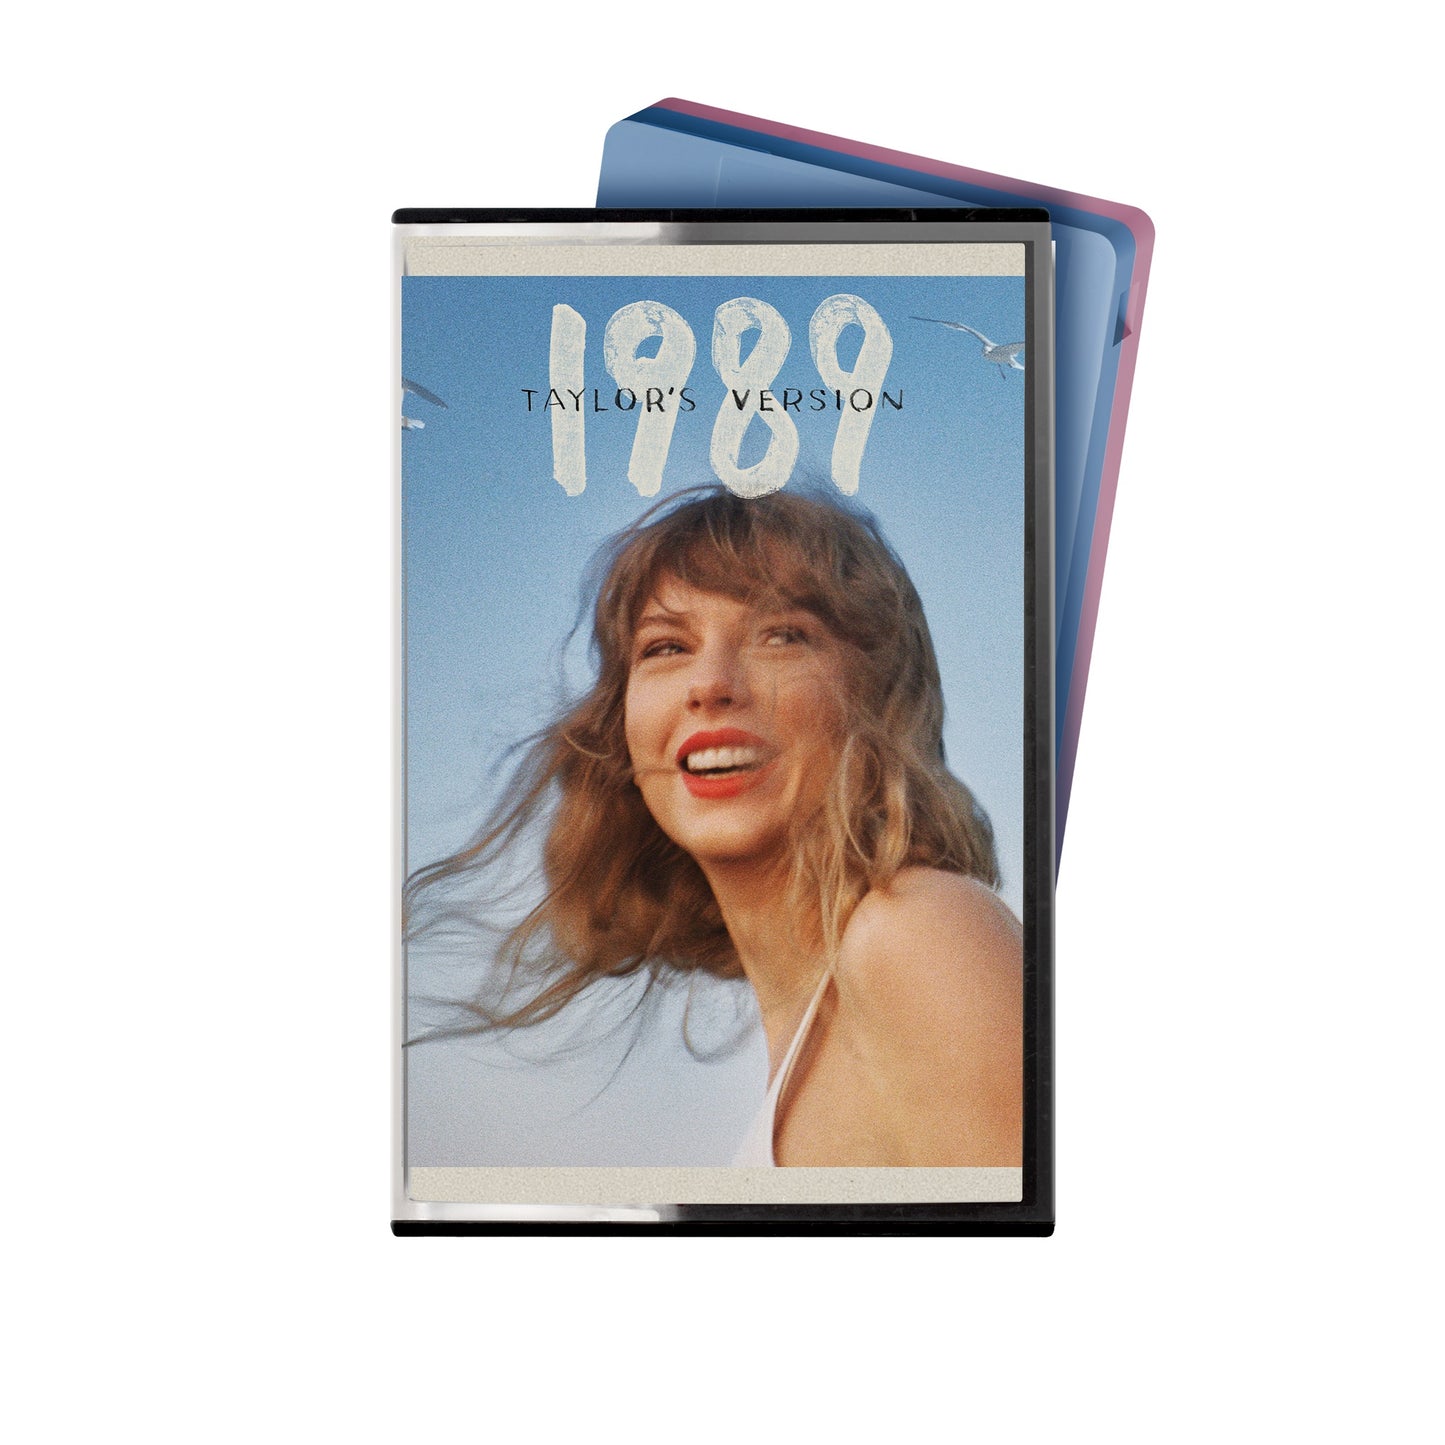 1989 (Taylor's Version) [Cassette]